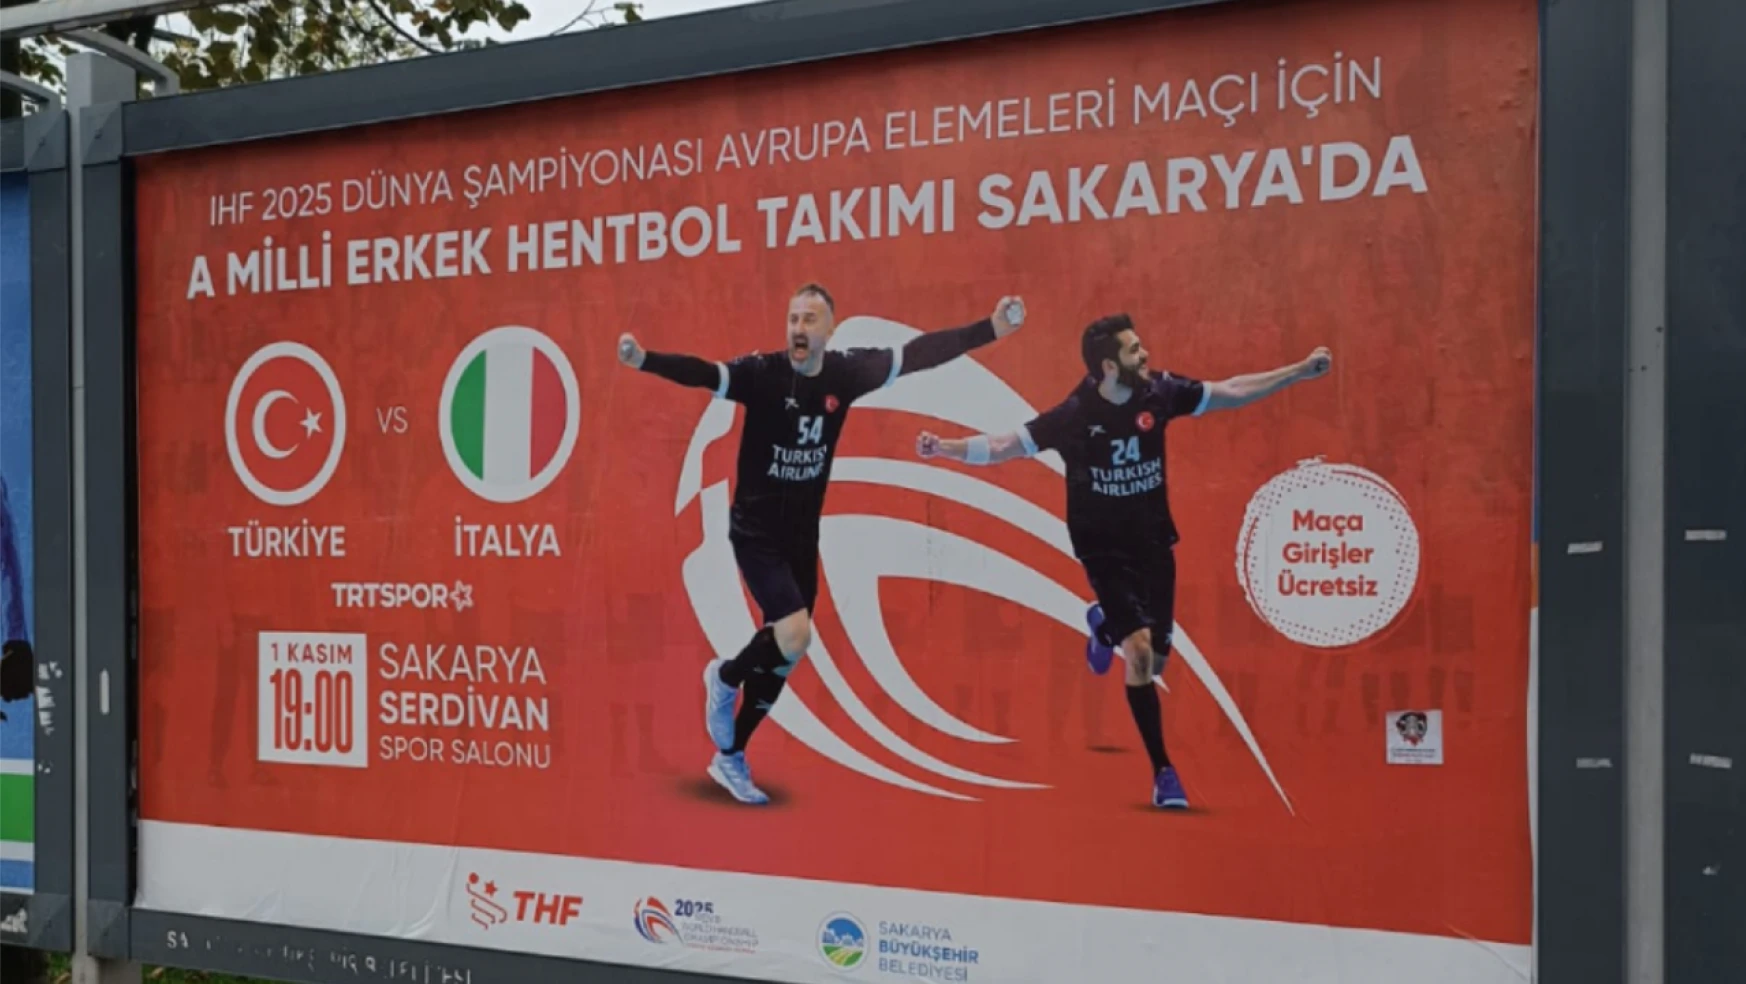 Türkiye'nin O İLinde İlk Hentbol Maçı